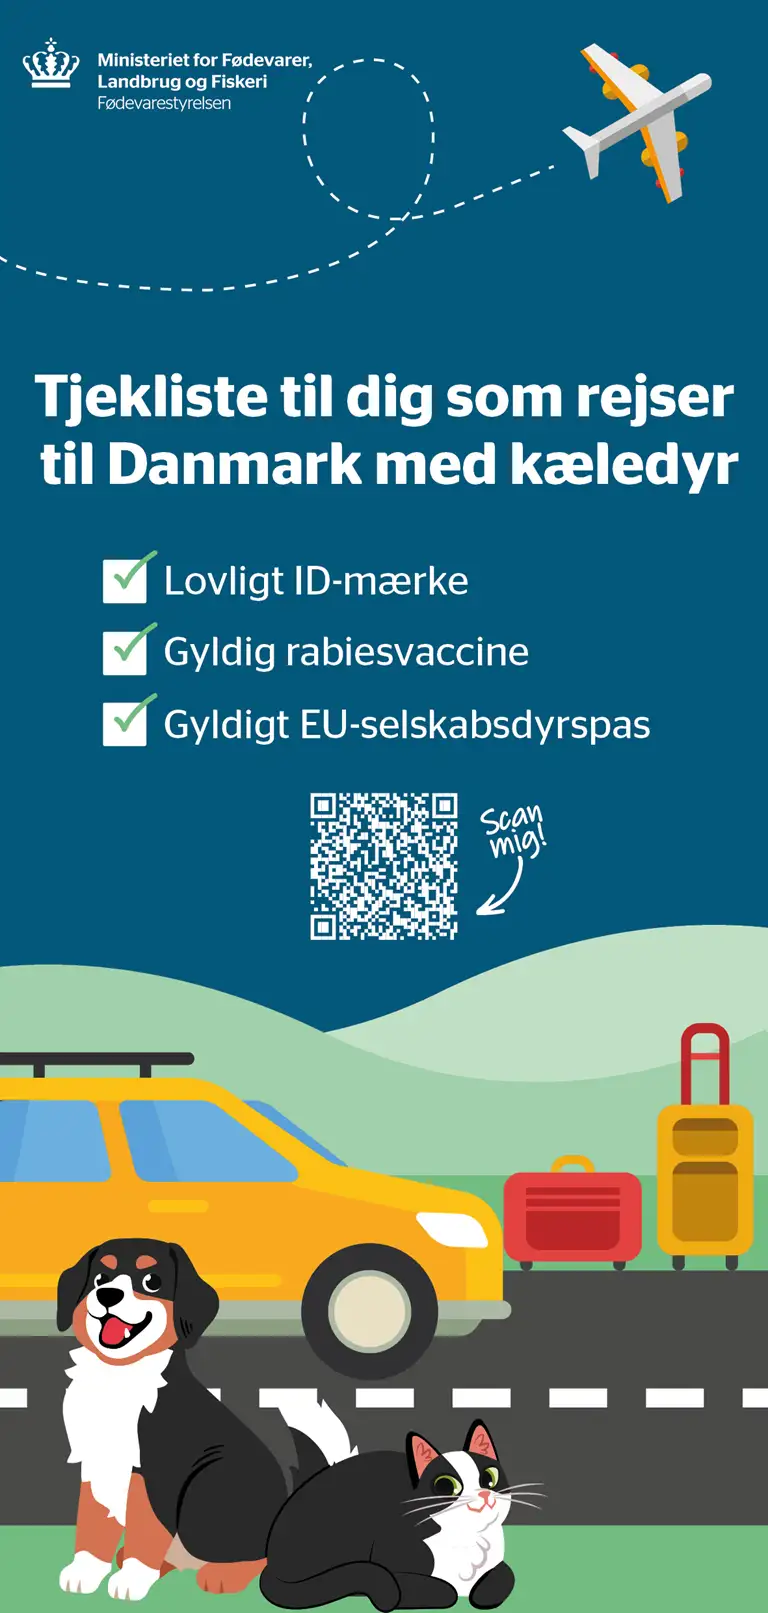 Tjekliste for rejser til Danmark med kæledyr. Husk: Lovligt ID-mærke. Gyldig rabiesvaccine. Gyldigt EU-selskabsdyrspas